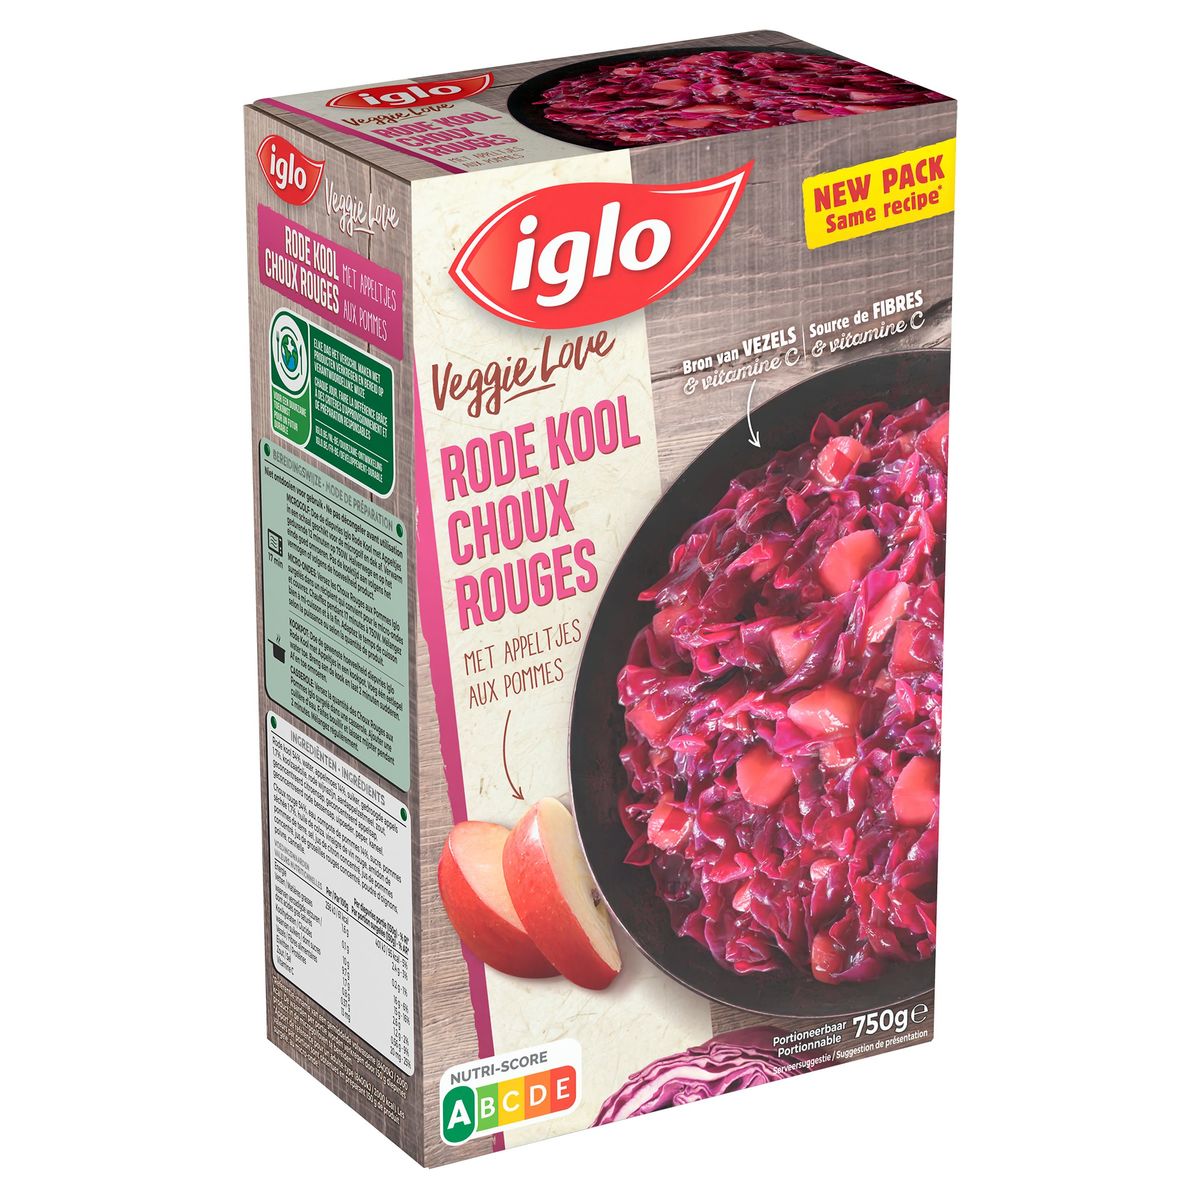 Iglo Veggie Love Choux Rouges aux Pommes 750 g